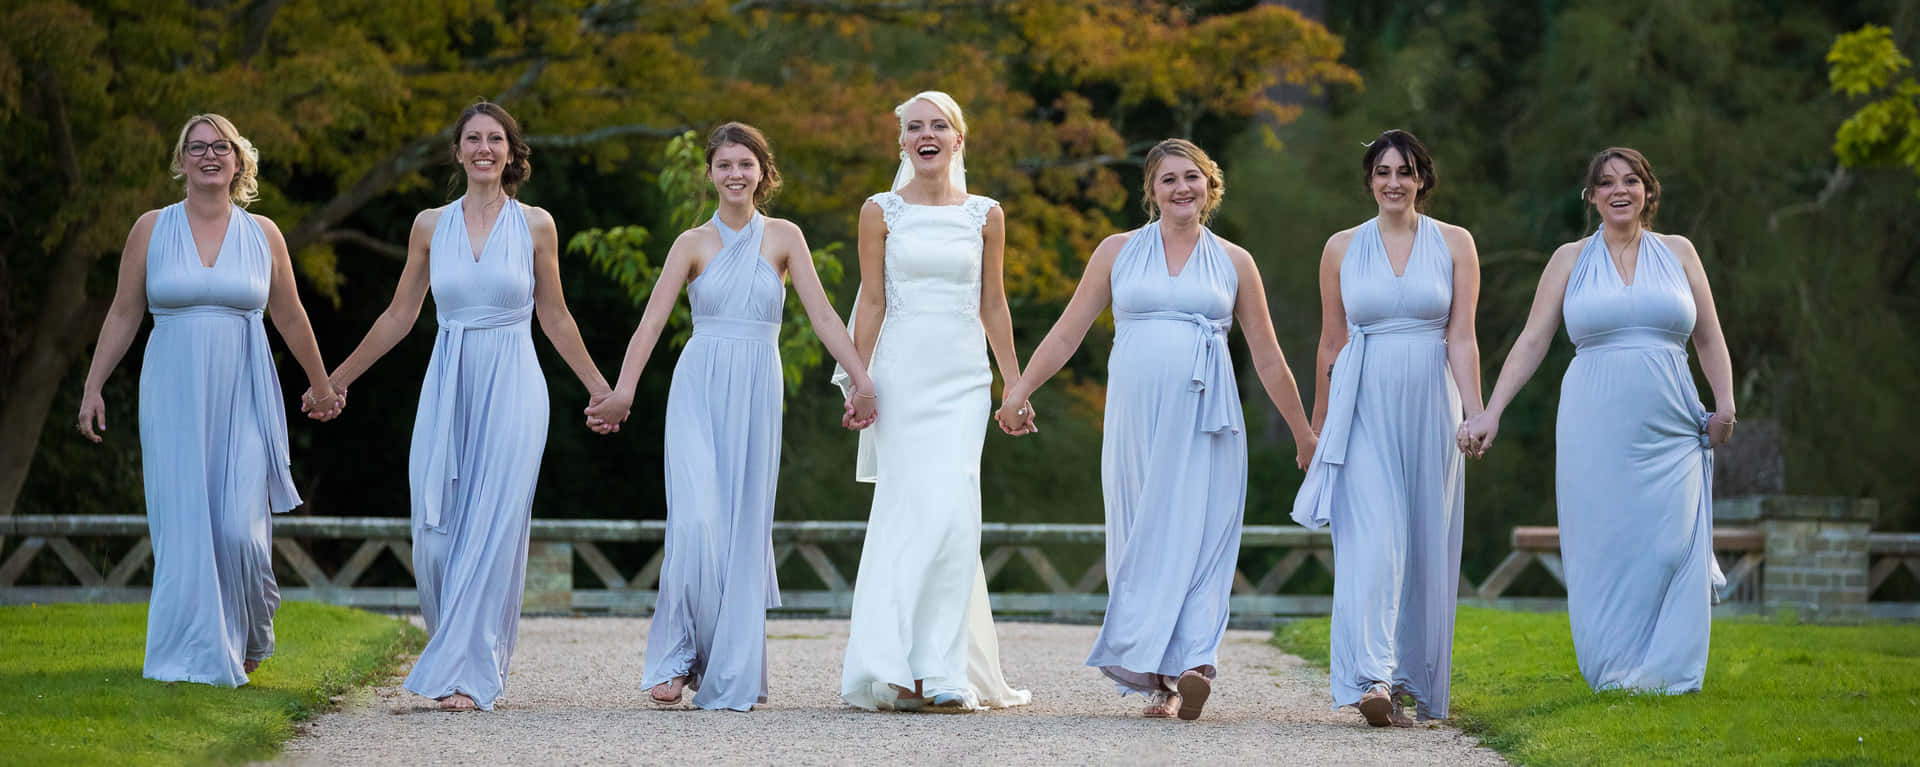 Bride Bridesmaids Pastel Blue Dresses Picture